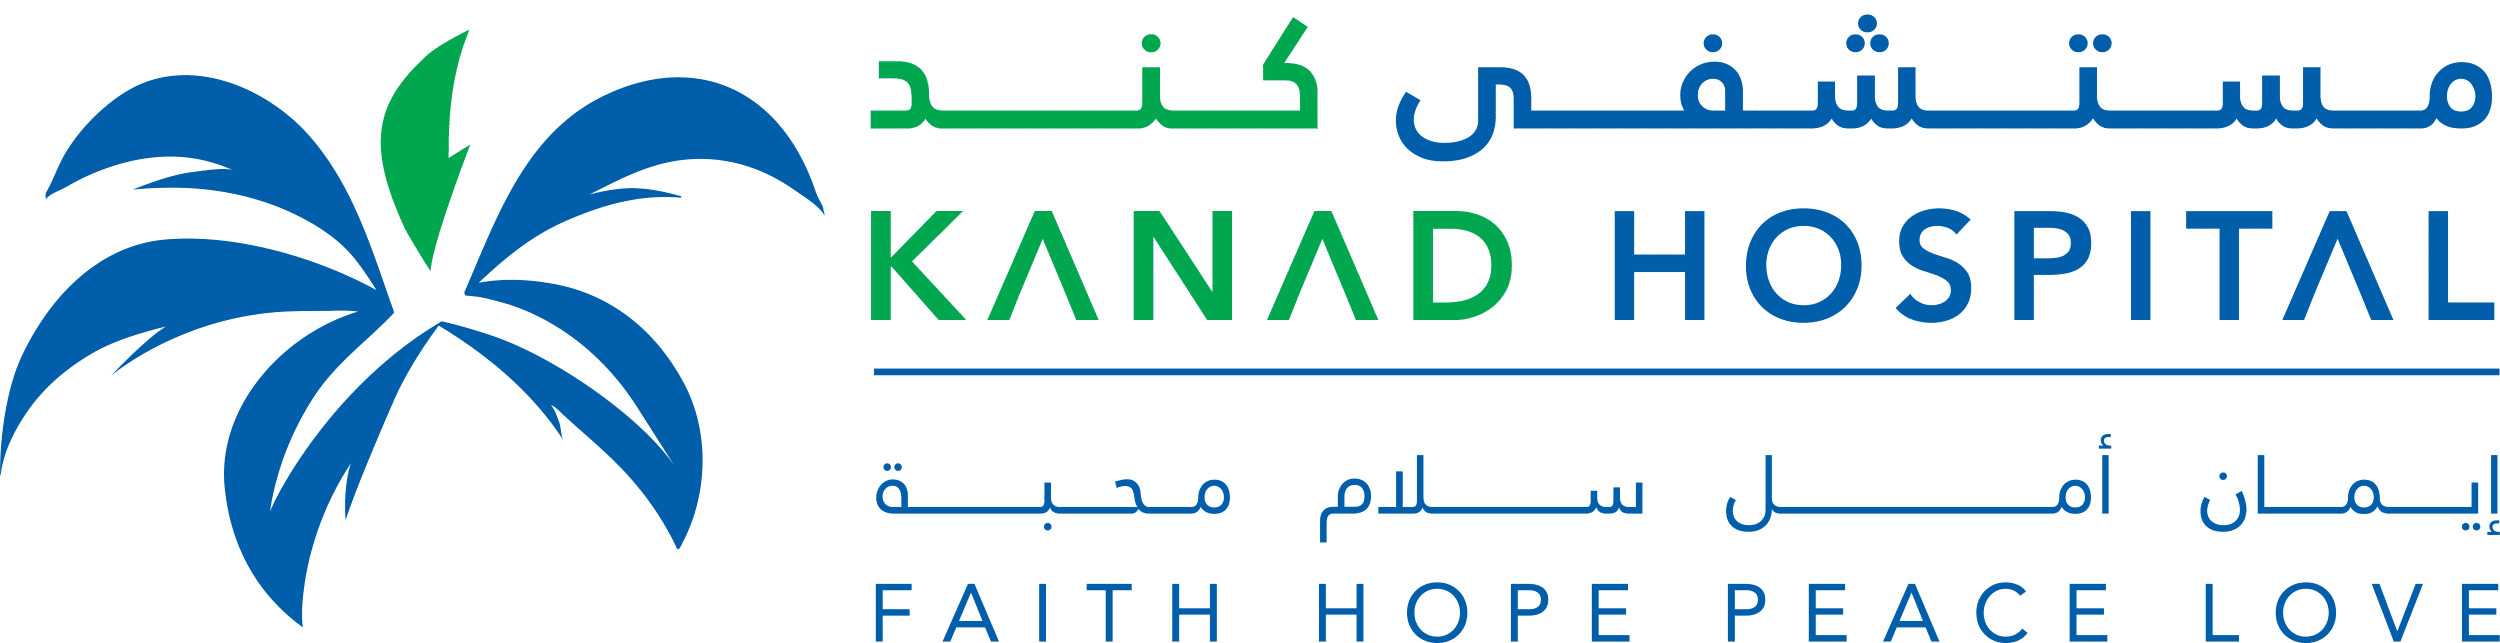 Kanad Hospital Logo